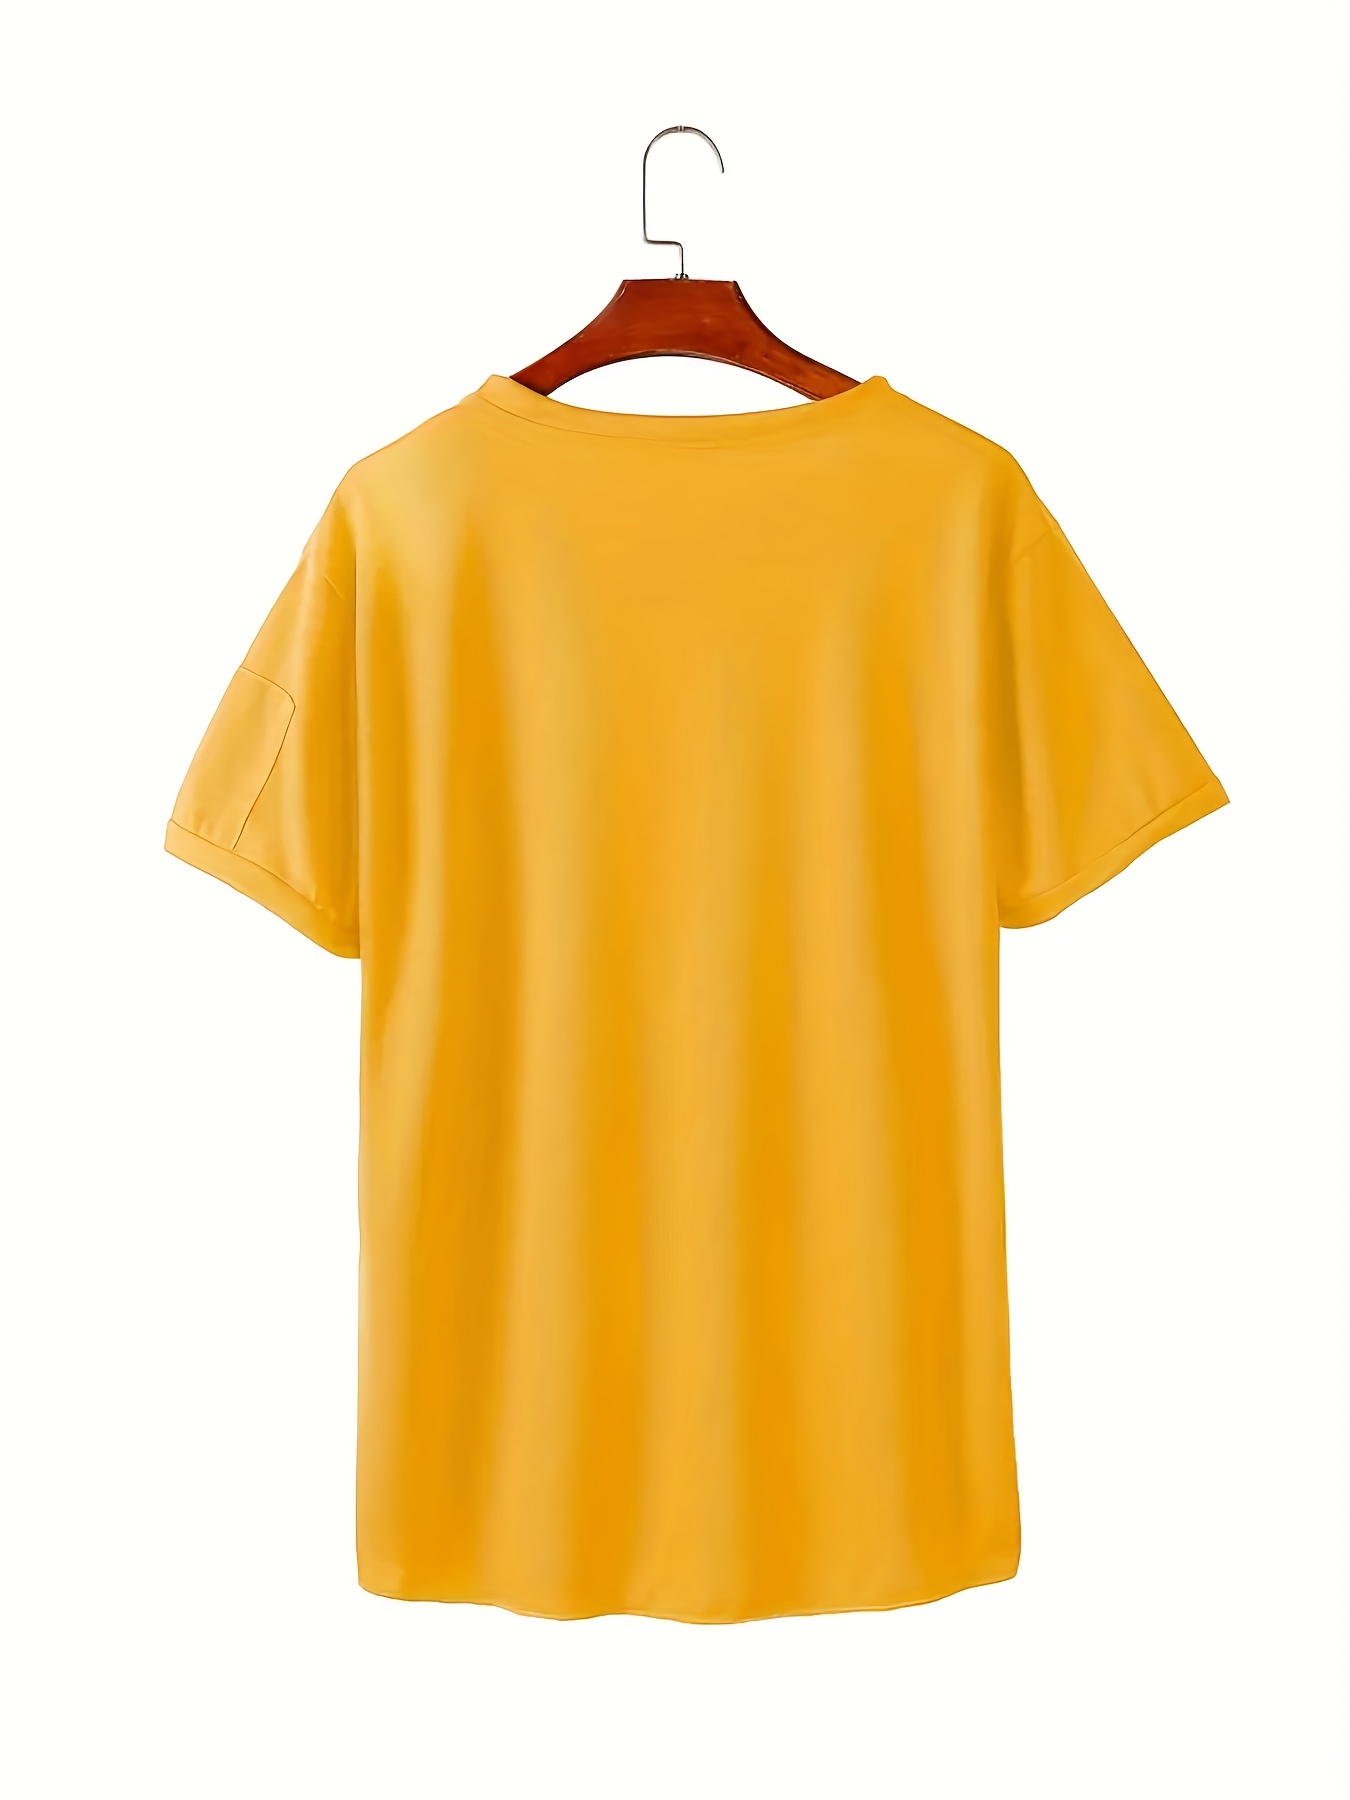 170 V-shaped t-shirts ideas  v shape t shirt, shirts, mens tshirts